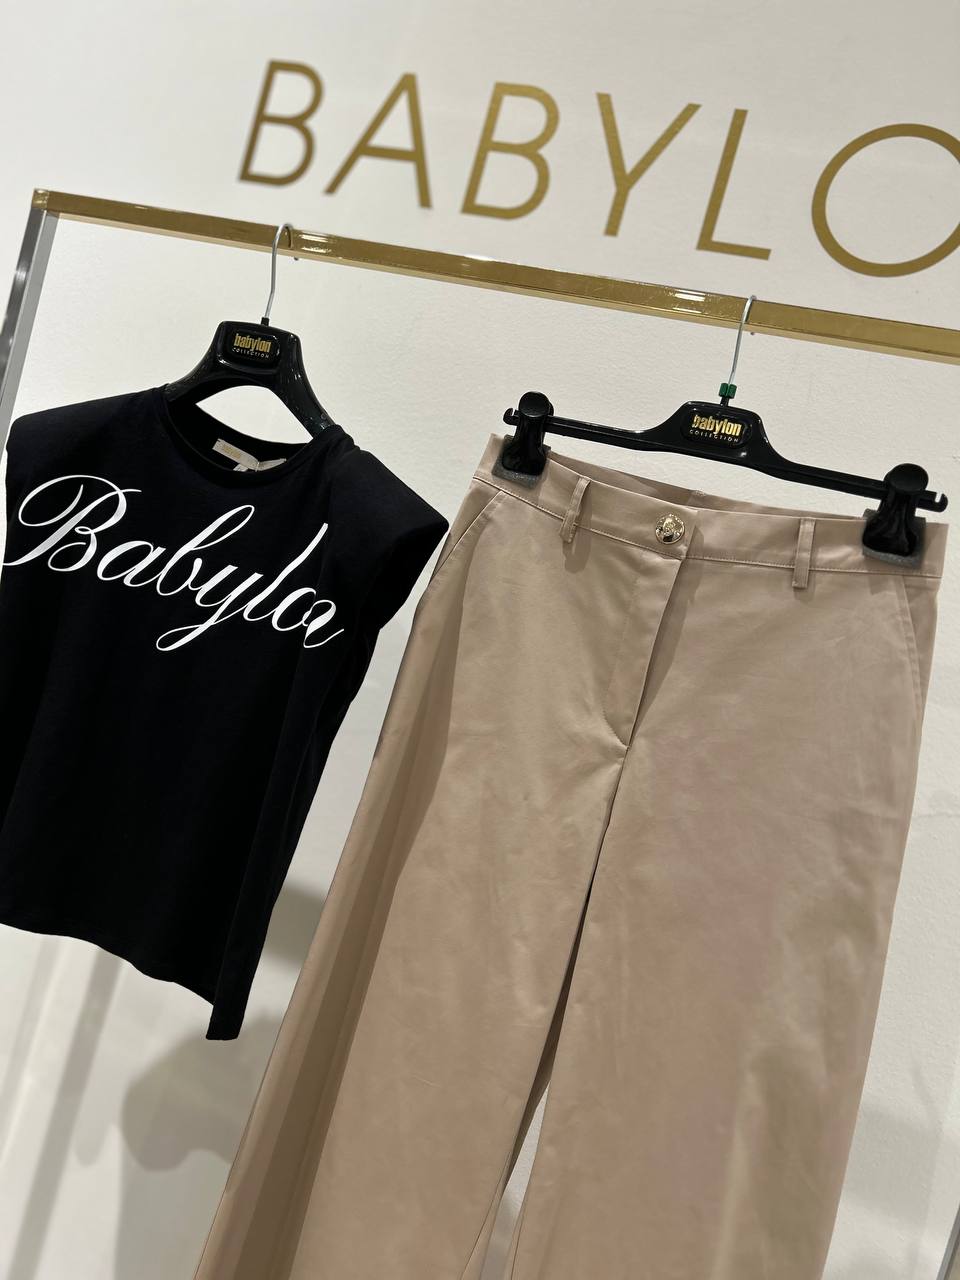 Итальянская одежда, бренд Babylon, арт. 73265745